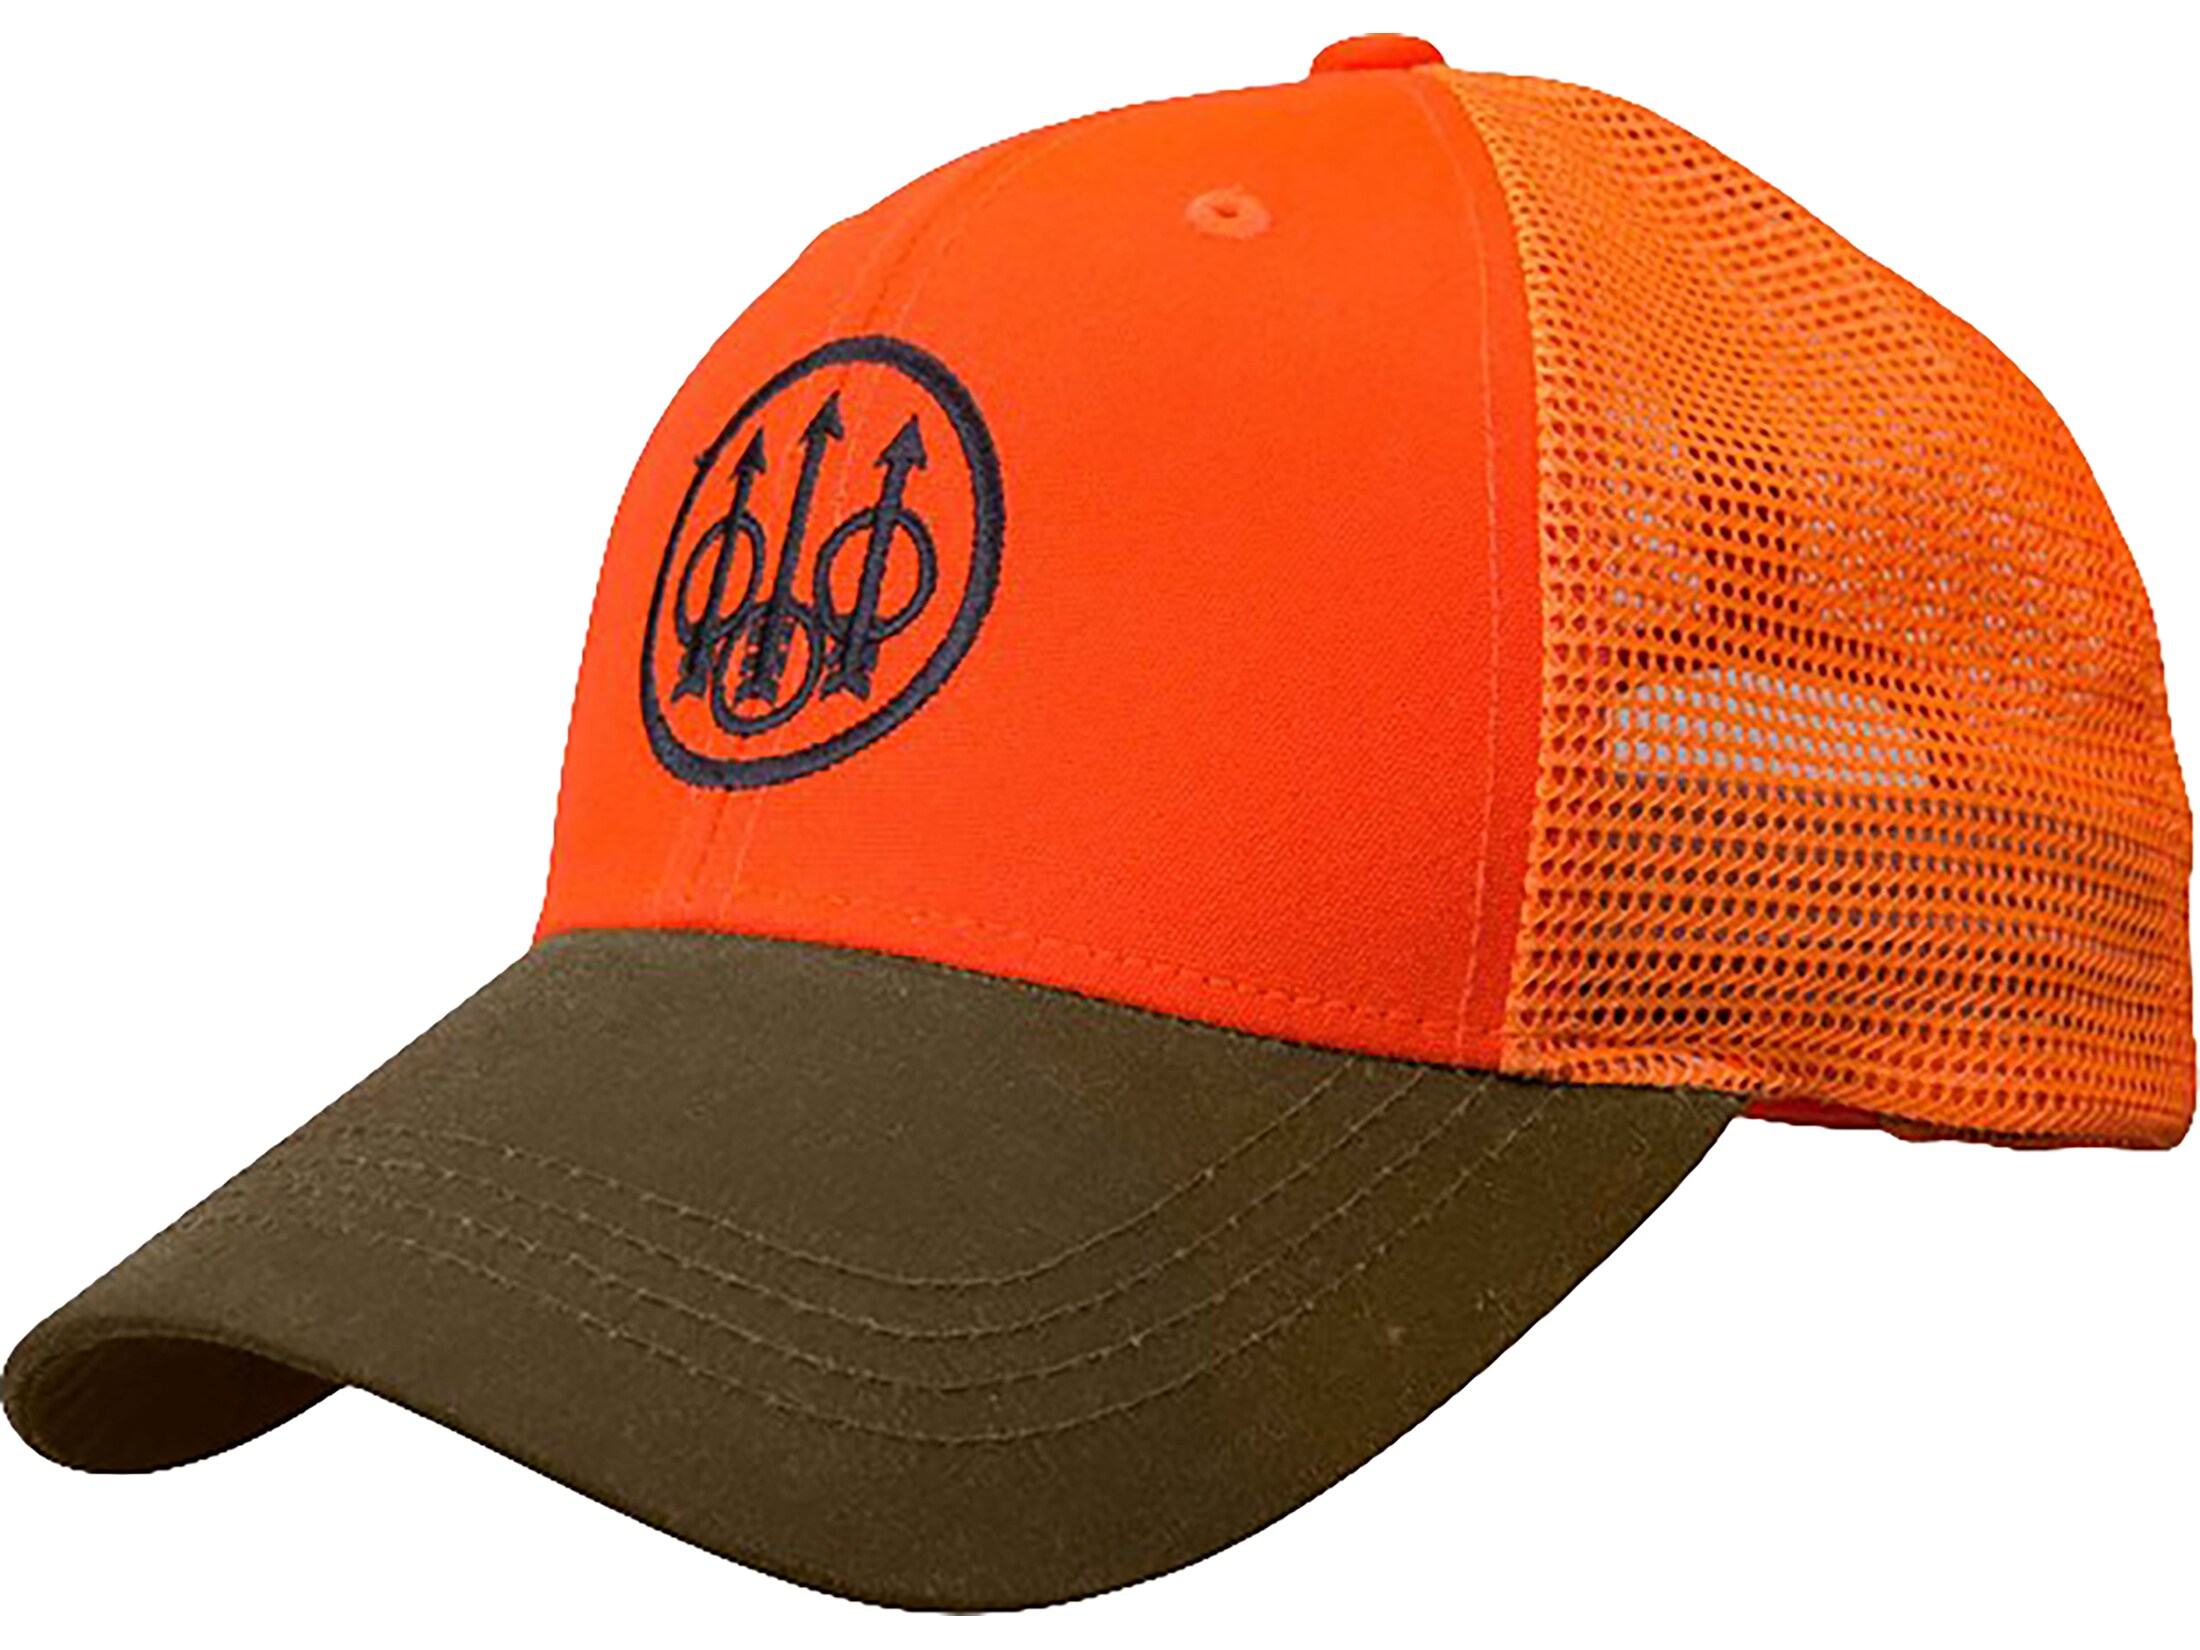 Beretta Men's Upland Trucker Hat Tobacco/Blaze Orange One Size Fits